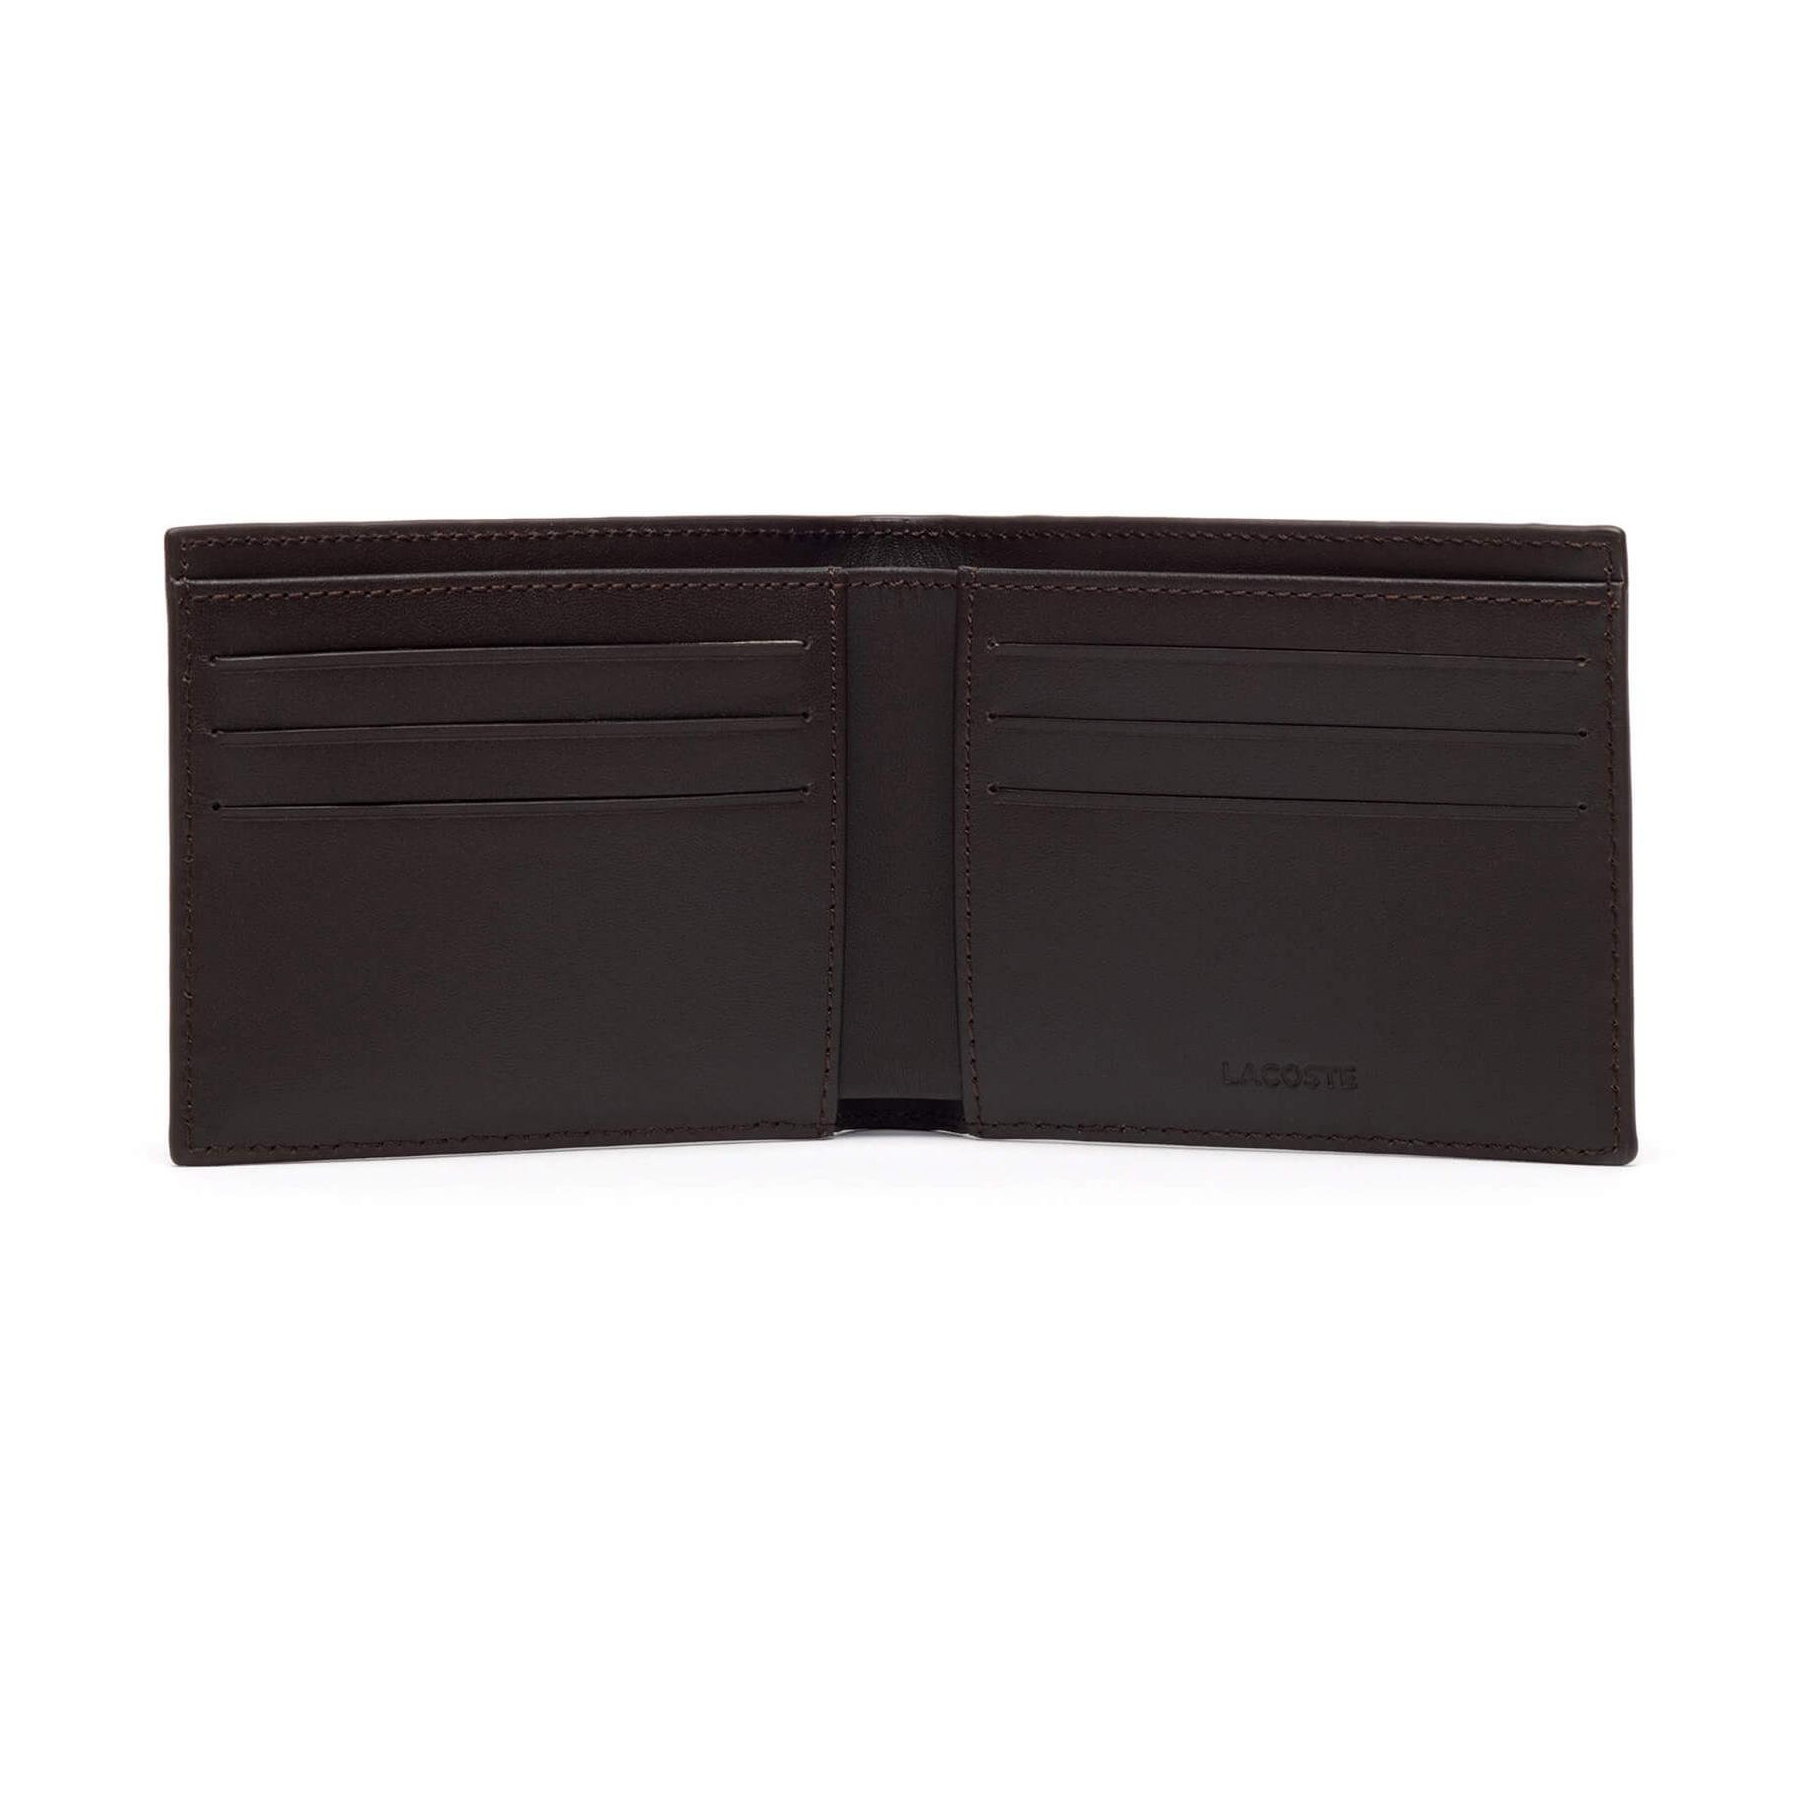 Ví Nam Lacoste Men's Fitzgerald Leather Six Card Wallet NH1115FG028 Màu Nâu Đậm